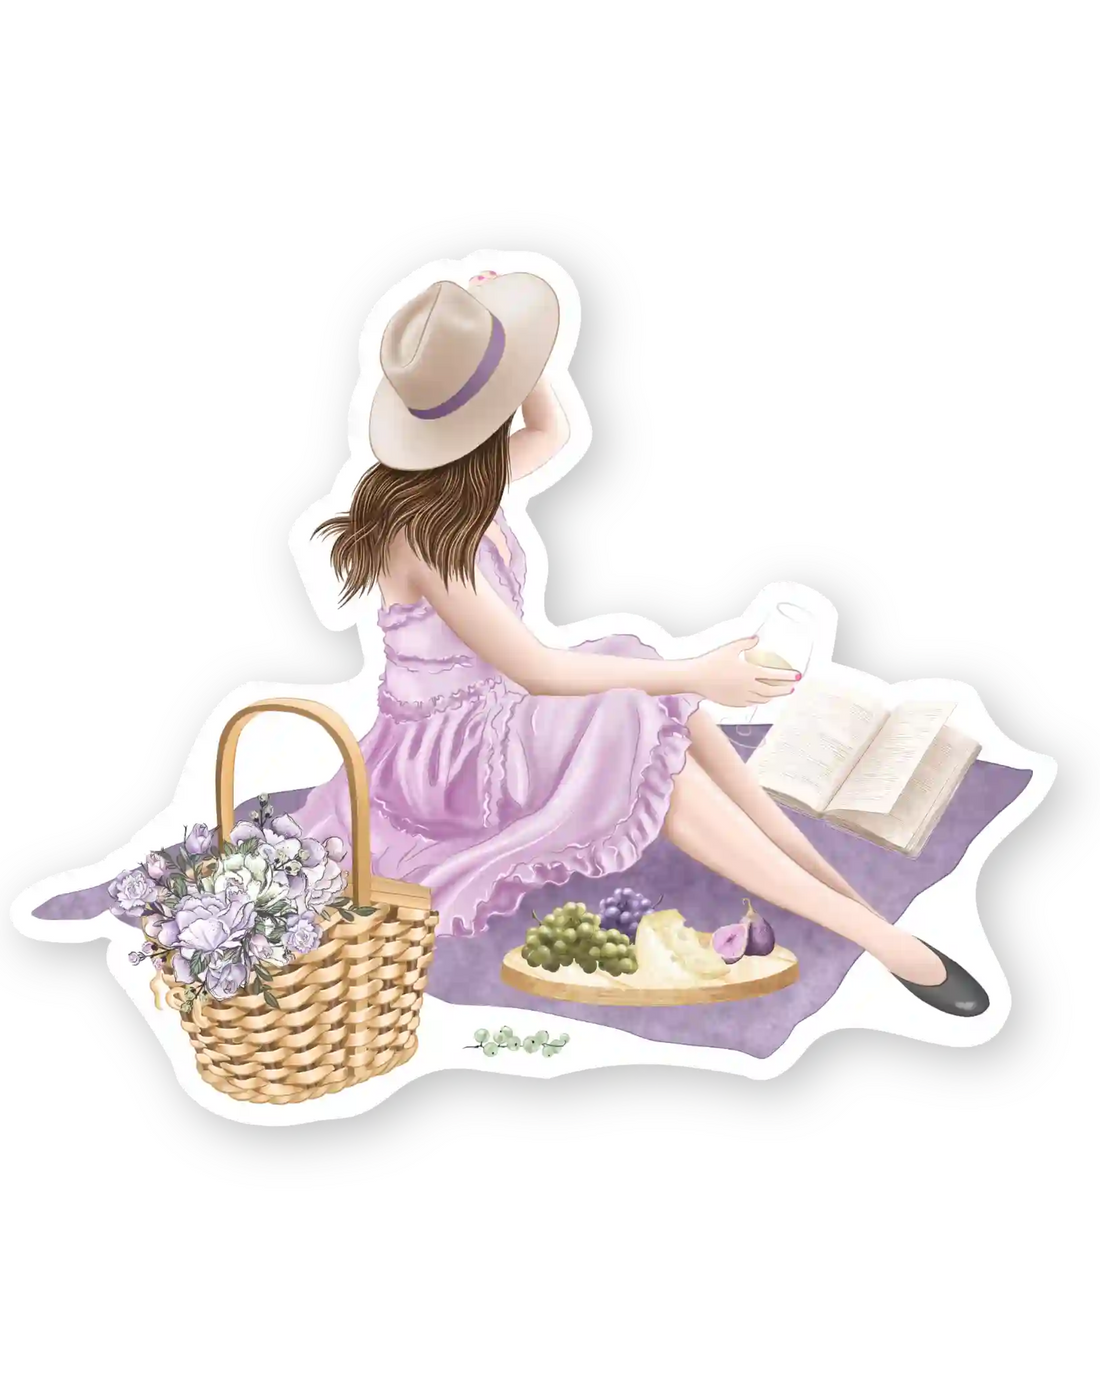 Naljepnice za planer Blankets and Baskets, ilustracije detalj djevojka sjedi na piknik dekici pored košare s cvijećem i voćem na pladnju